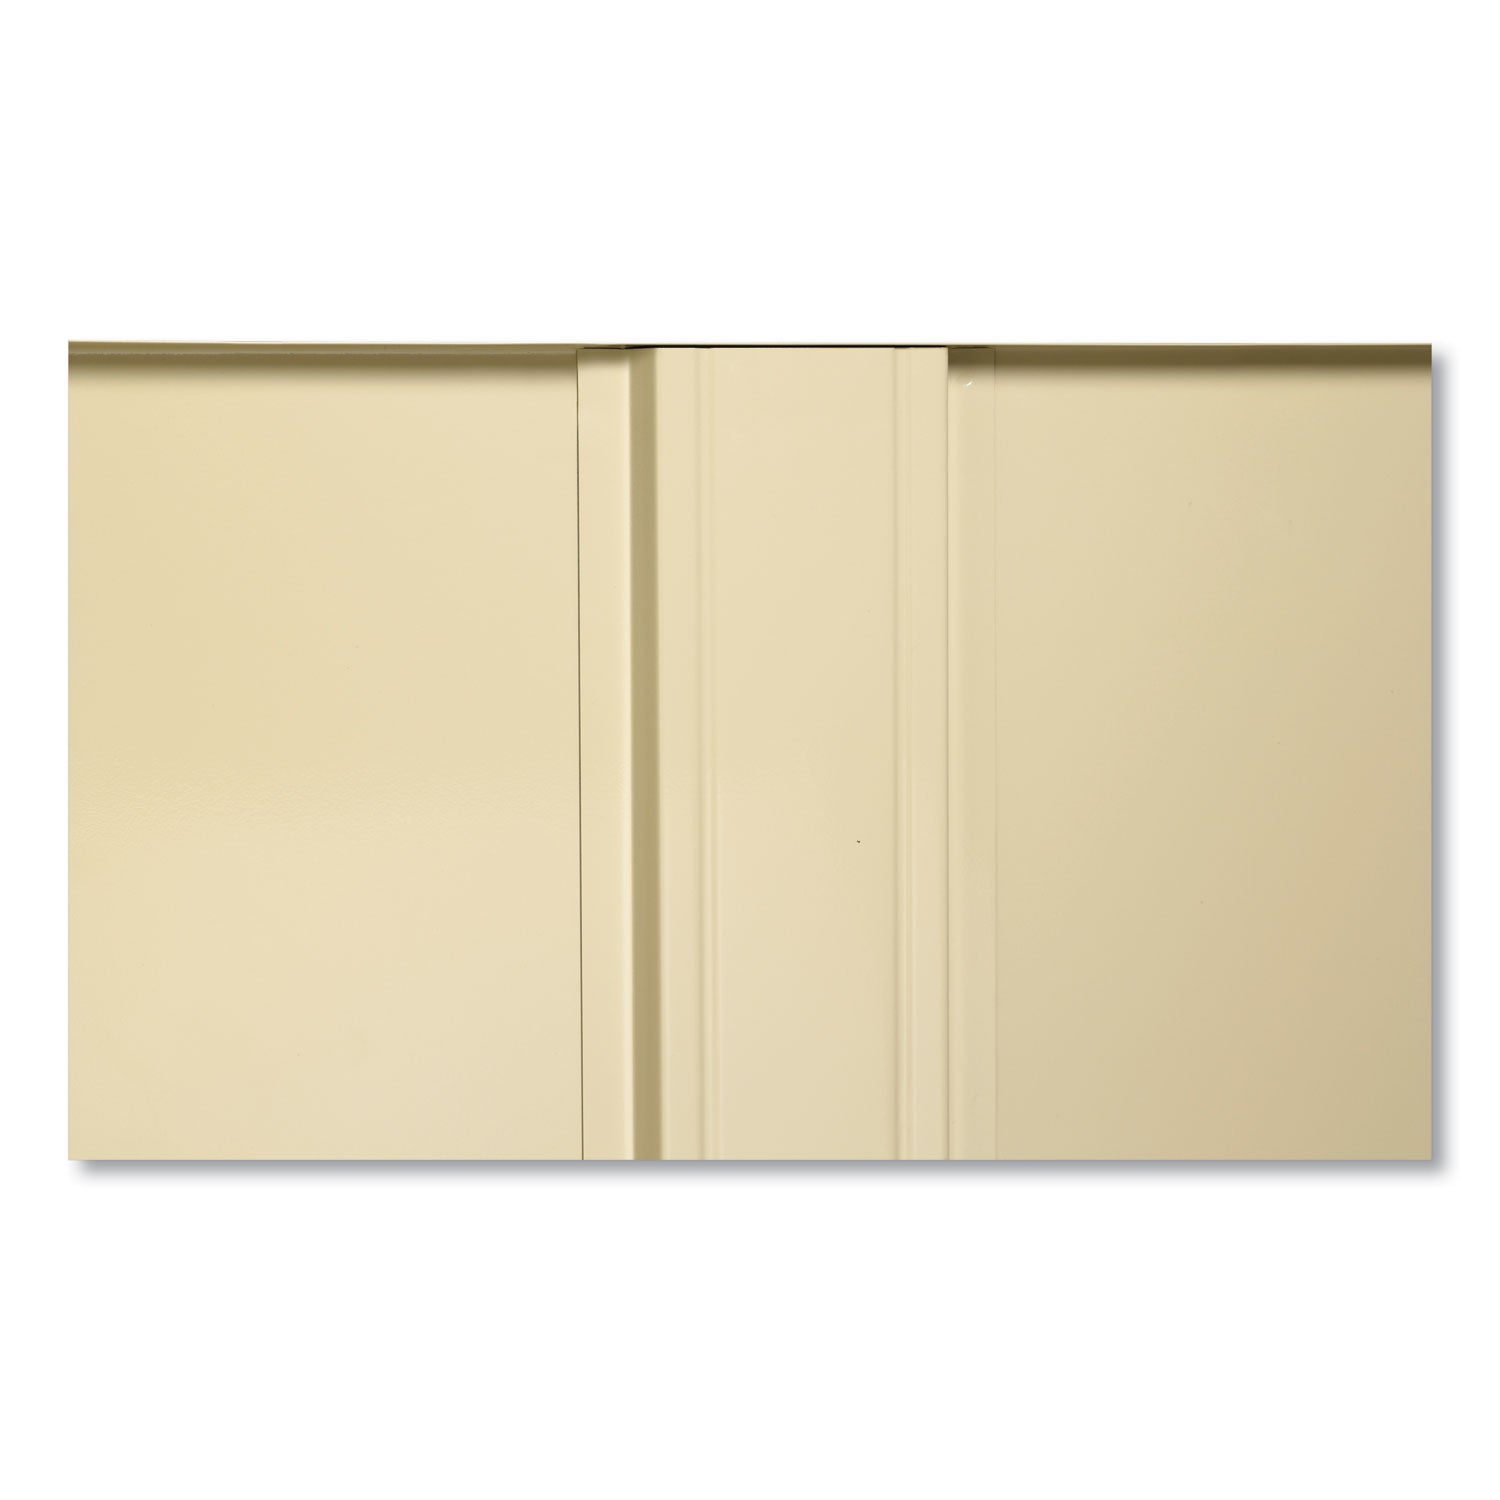 72" High Standard Cabinet (Assembled), 36w x 18d x 72h, Light Gray - 